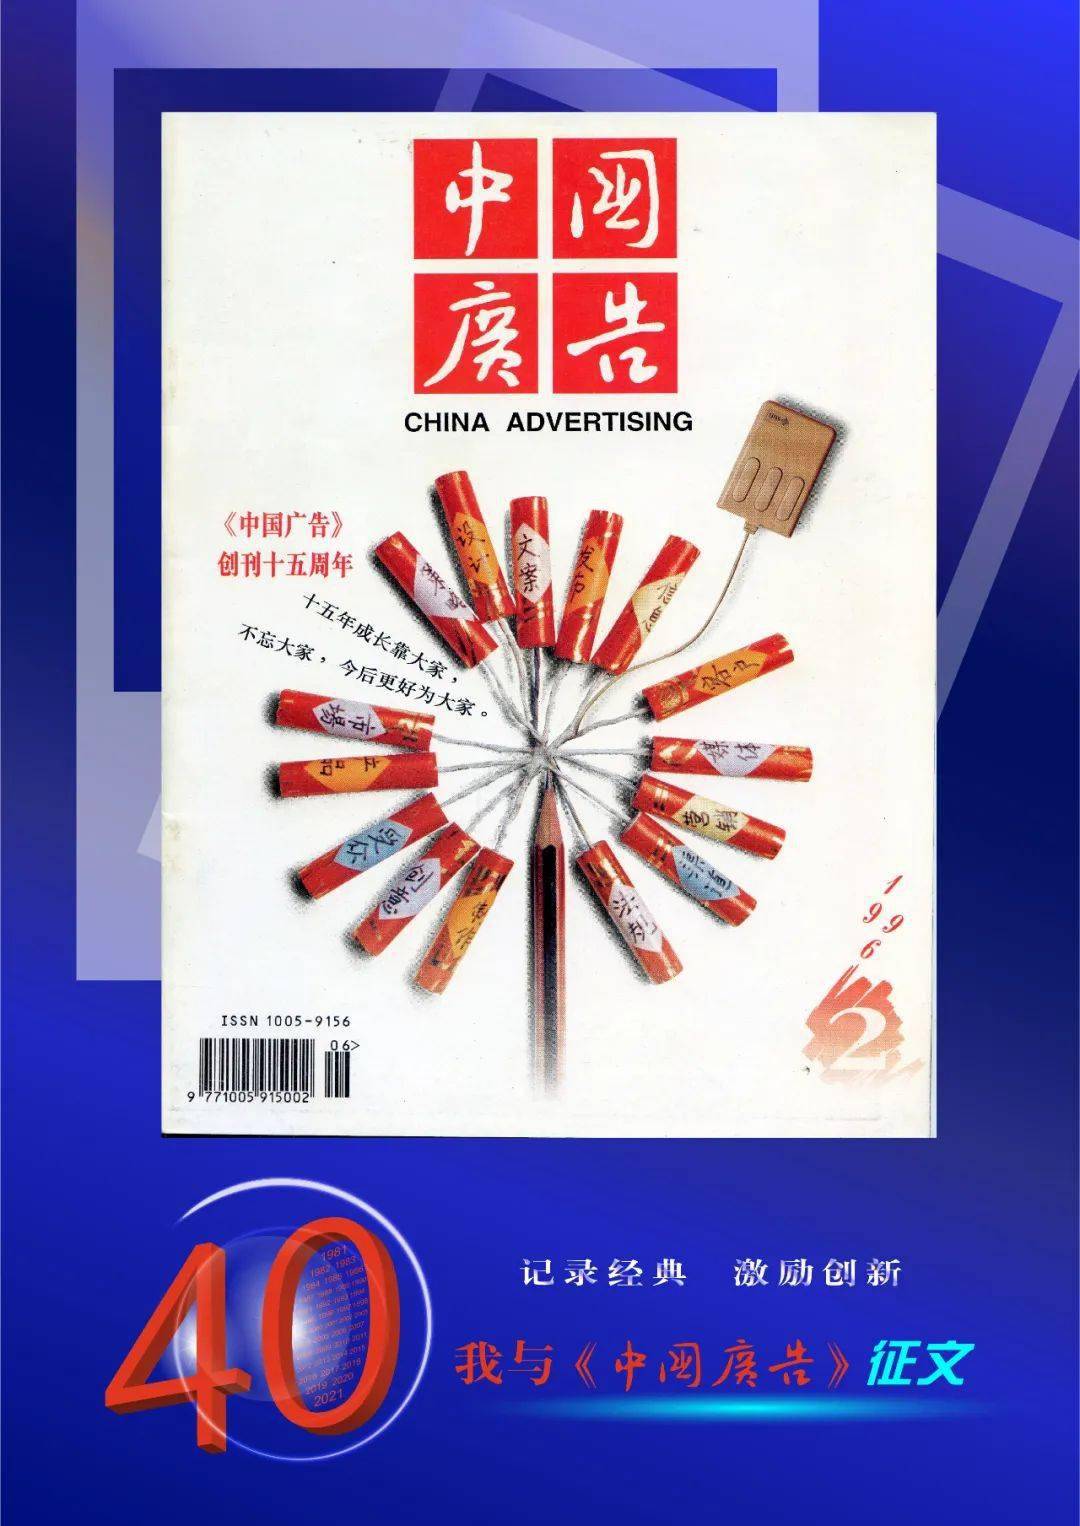 “我与《亚星体育中国广告》”征文启动(图1)